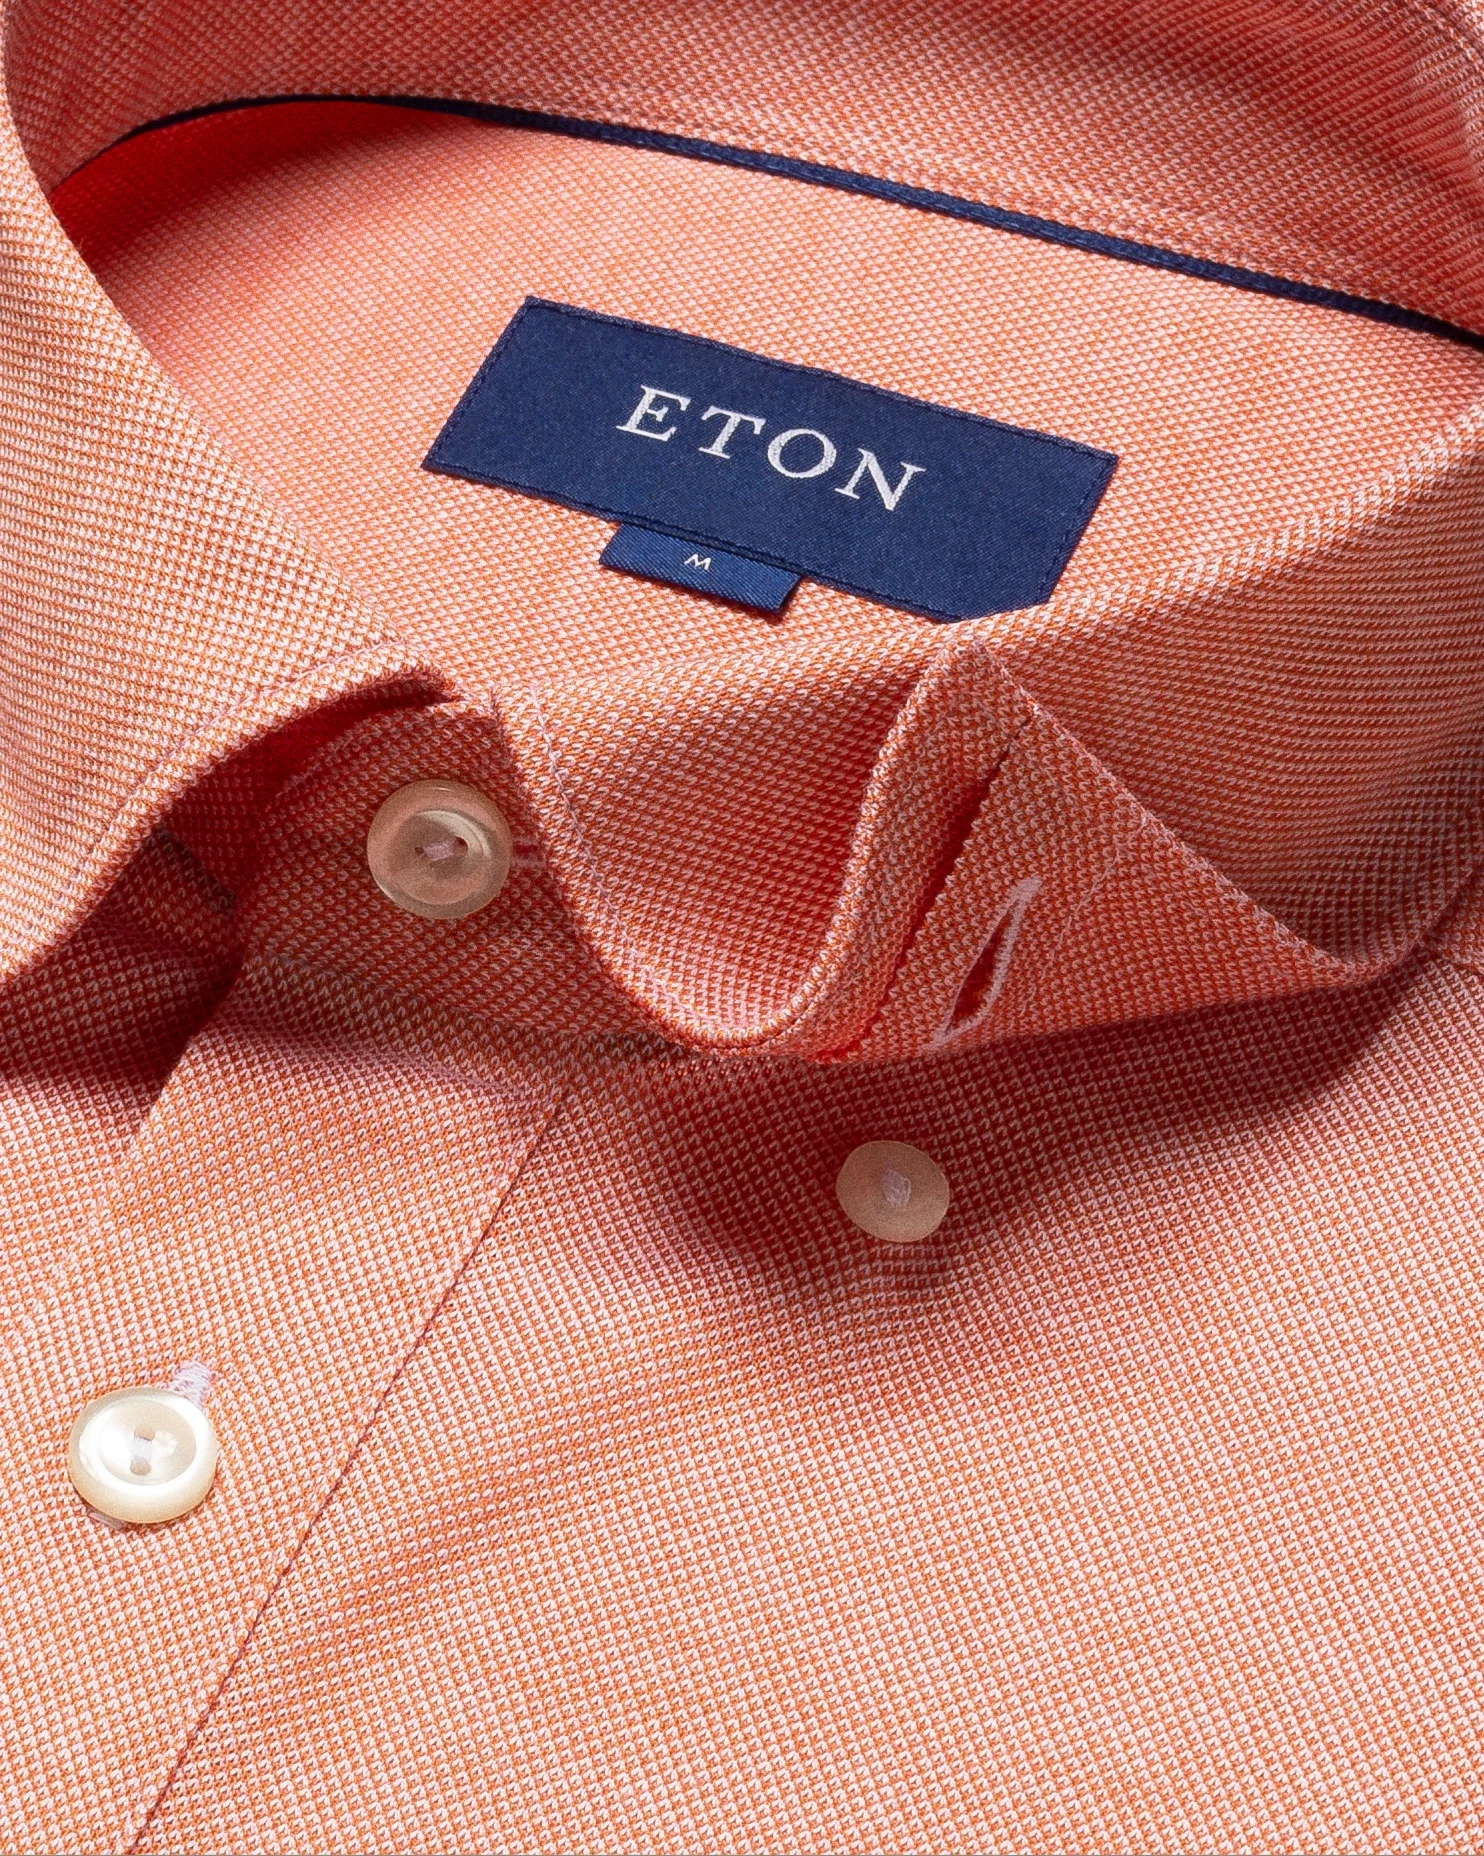 Eton - orange jersey button under